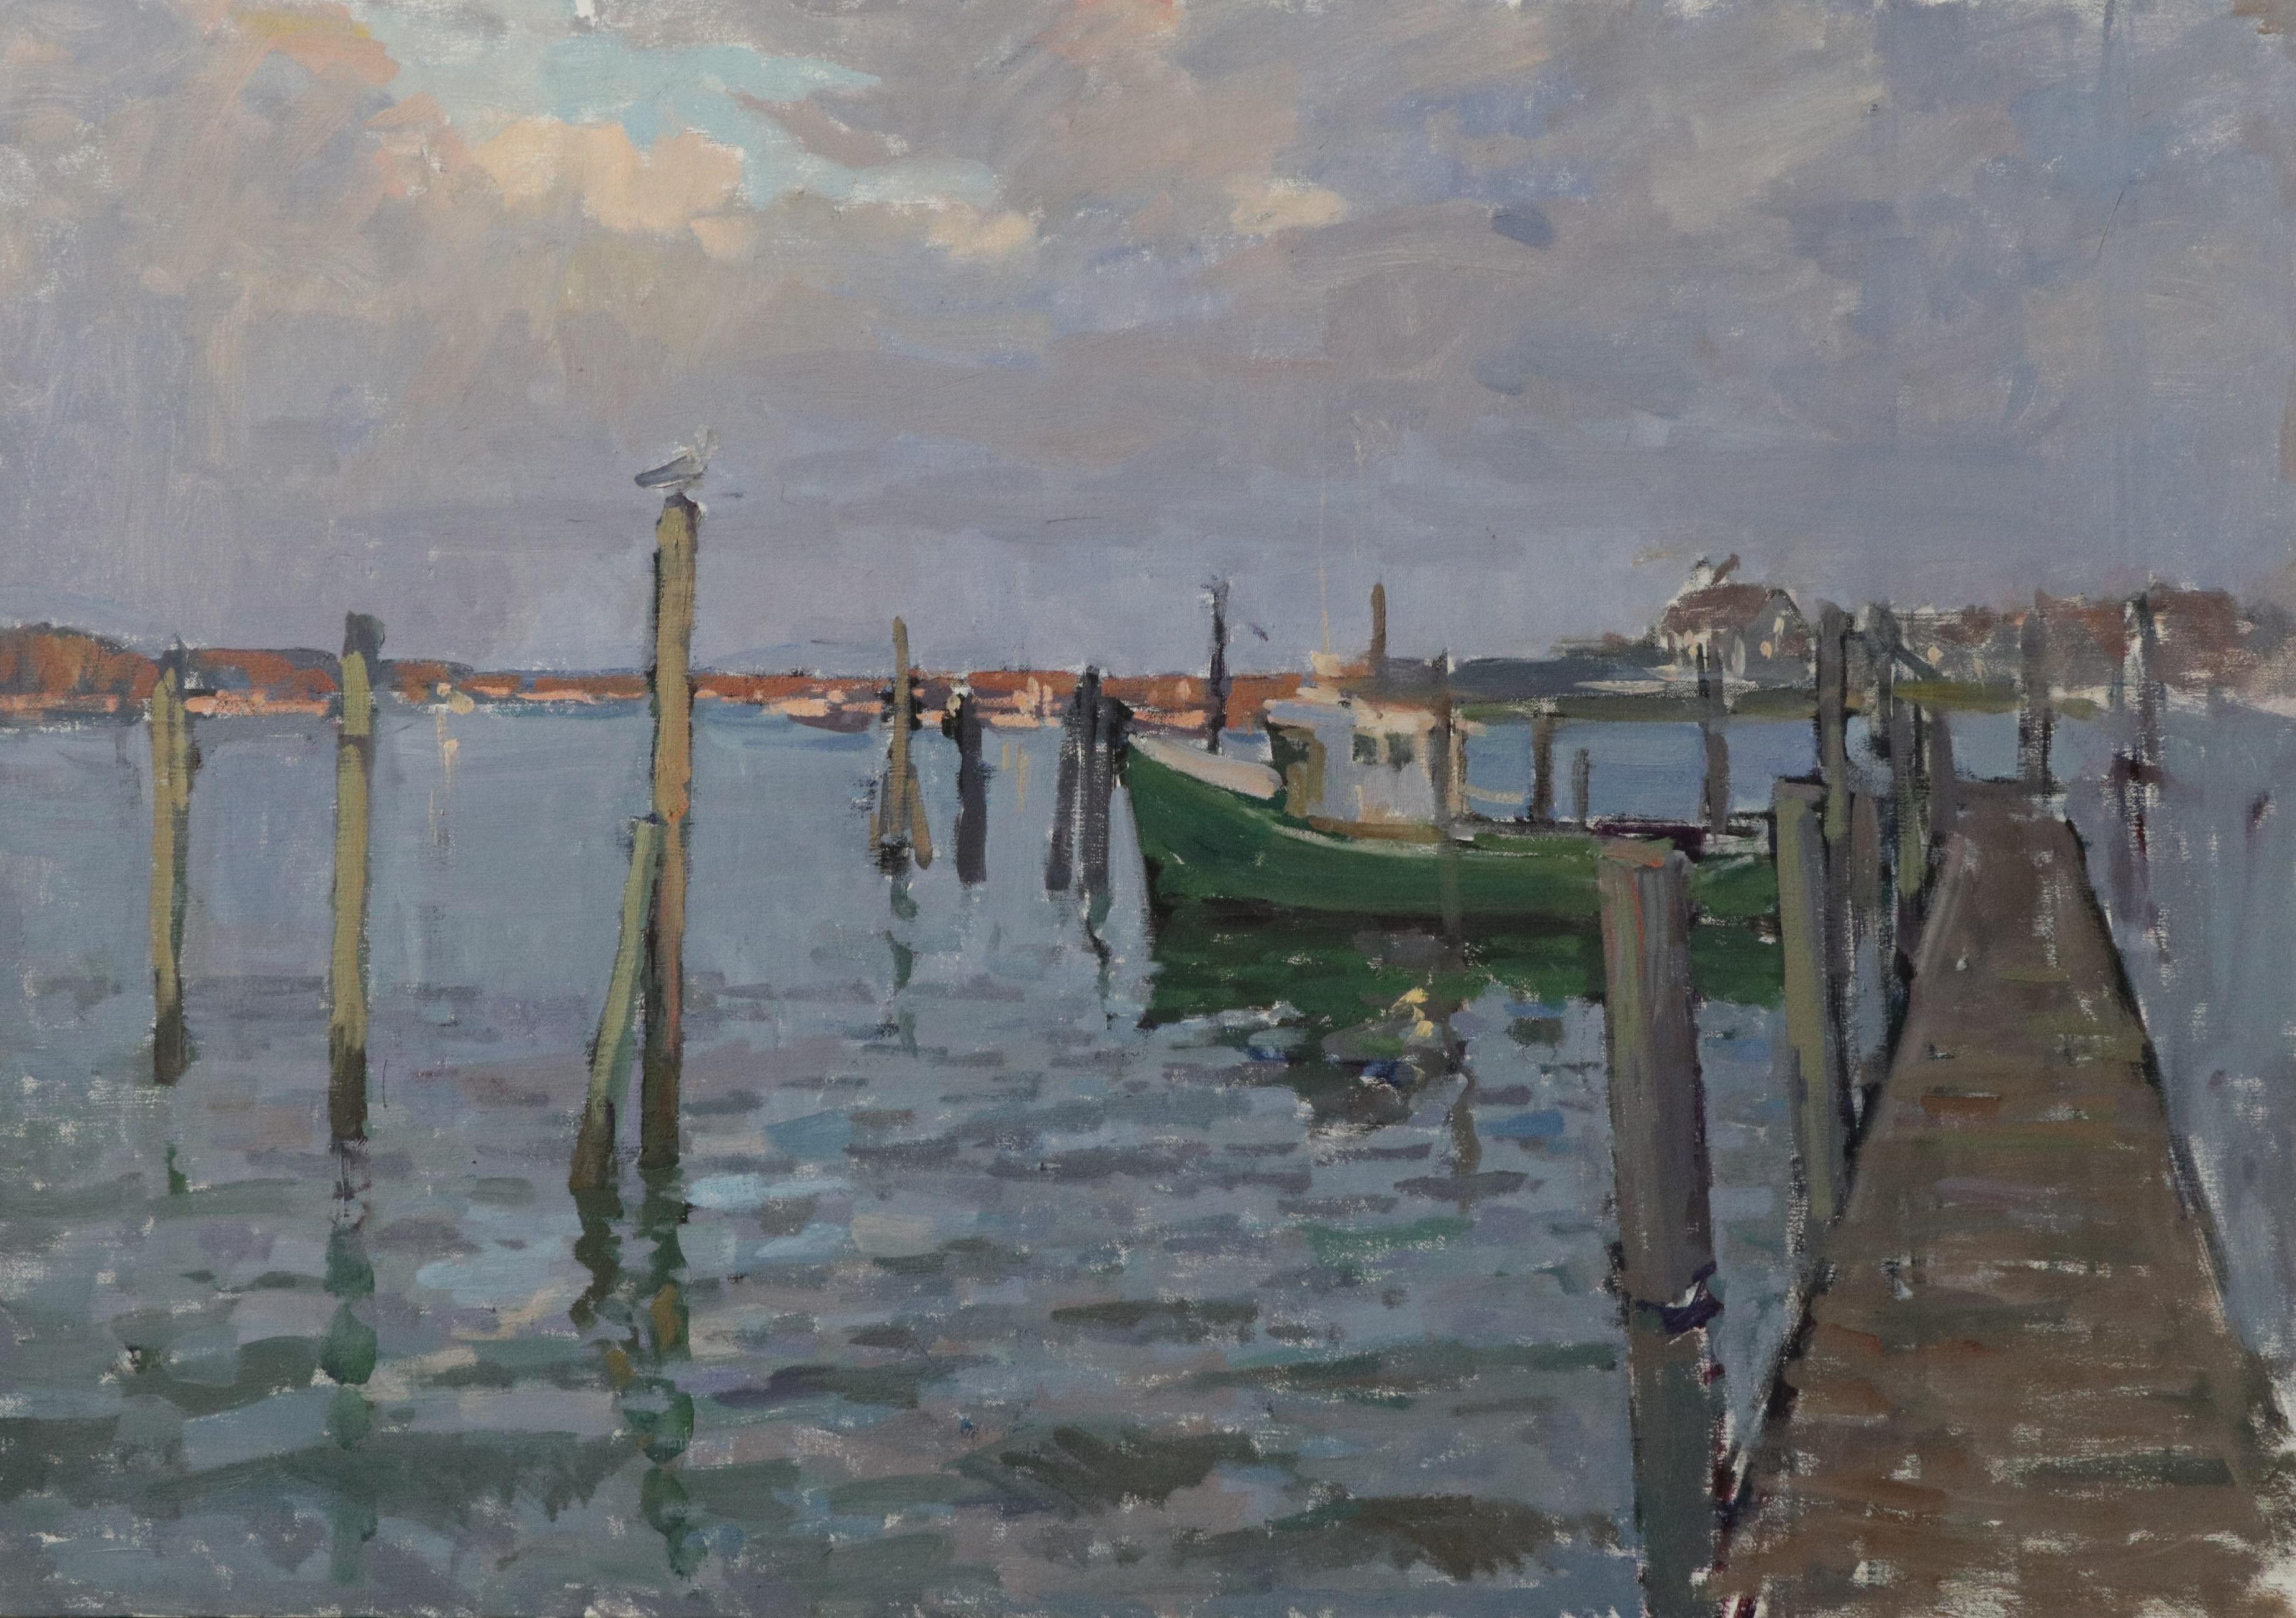 Evening at Montauk Harbor - 2023 Impressionistic Harbor - plein air painting